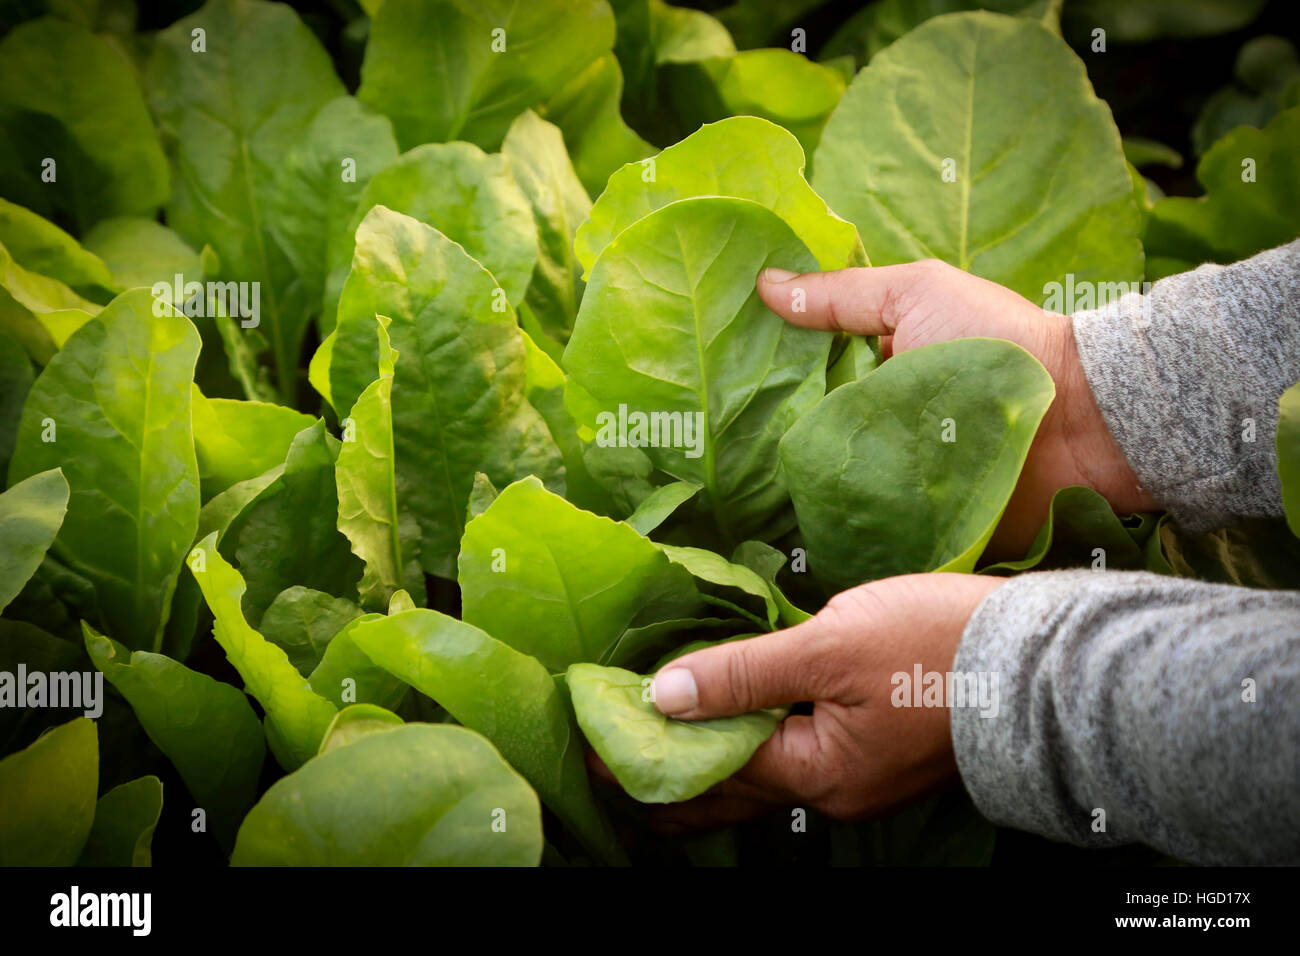 Les feuilles d'épinards frais et biologiques holding à la main dans le jardin Banque D'Images